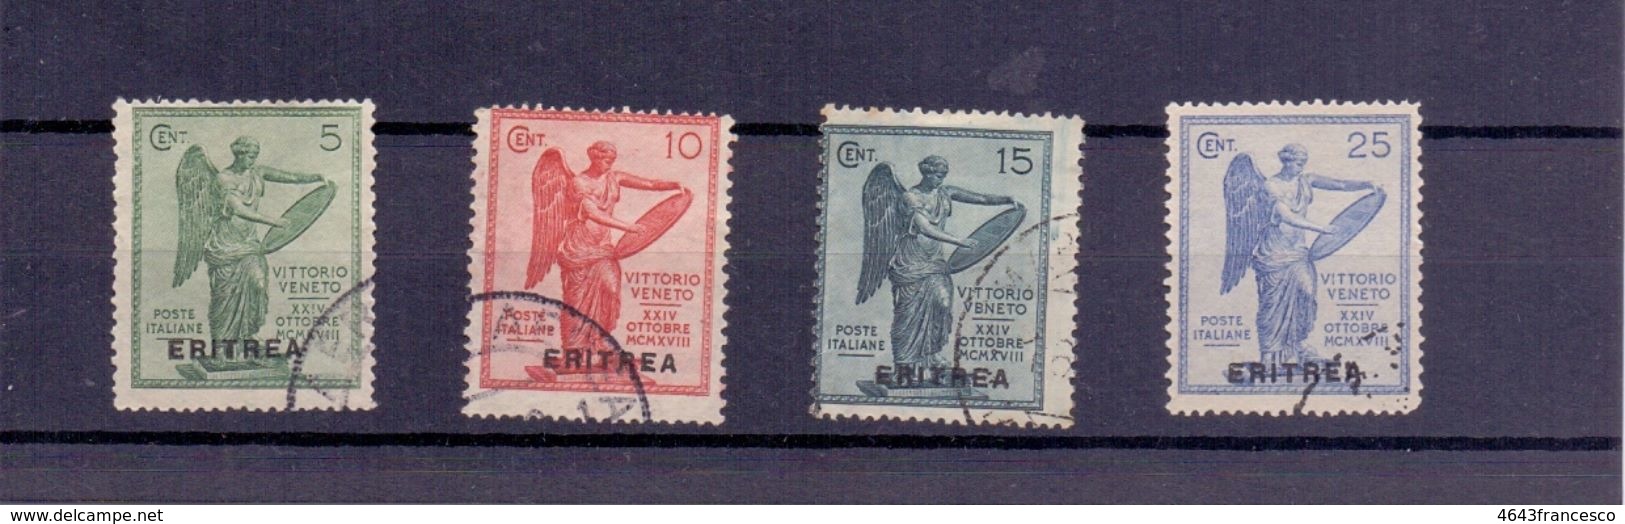 ERITREA  1922 Anniversario Della Vittora Serie Completa   Usata  018 - Eritrea